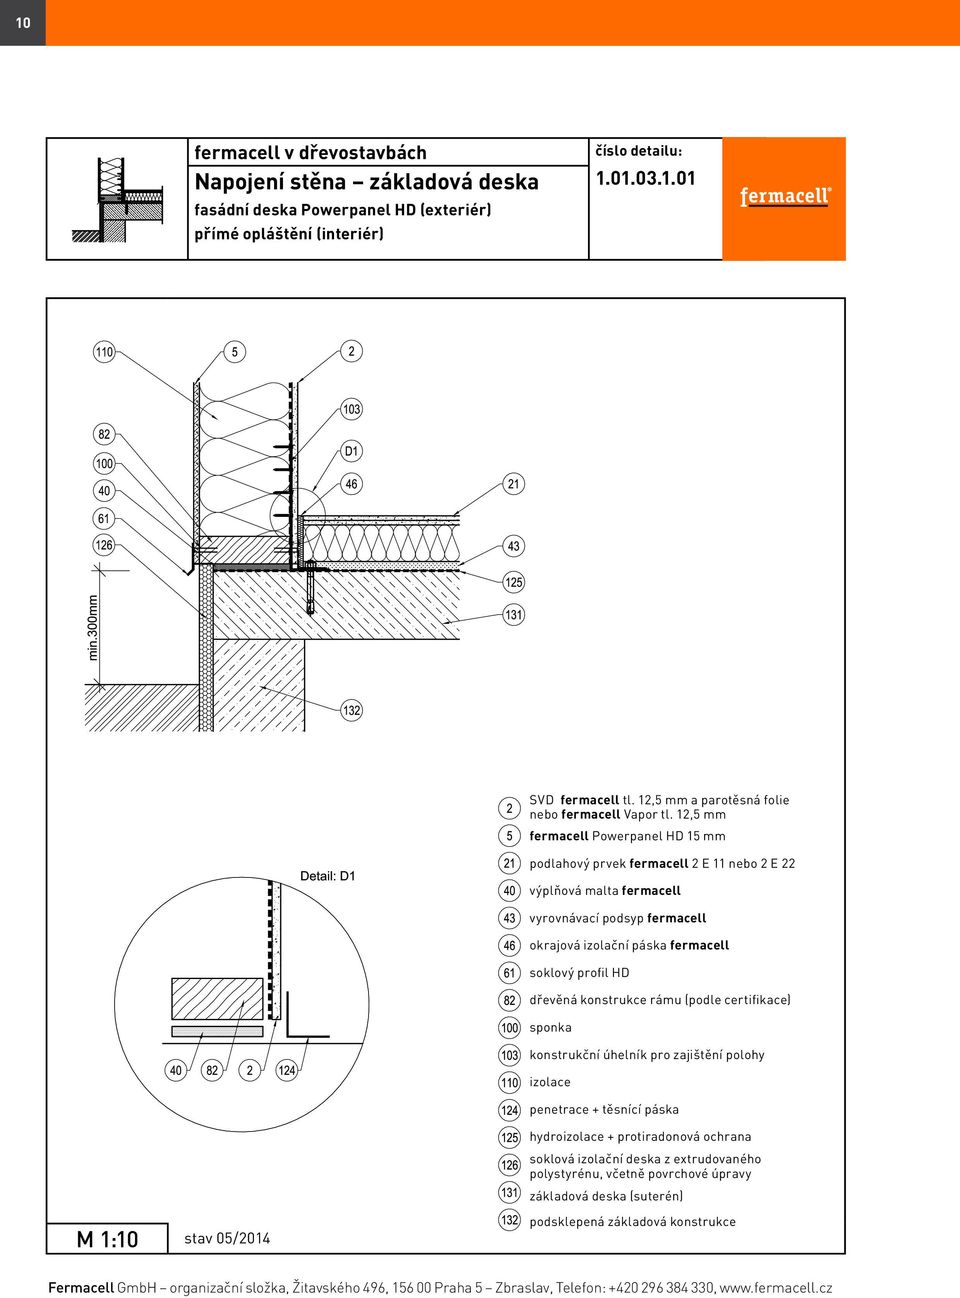 soklový profil HD konstrukční úhelník pro zajištění polohy penetrace + těsnící páska hydro + protiradonová ochrana soklová